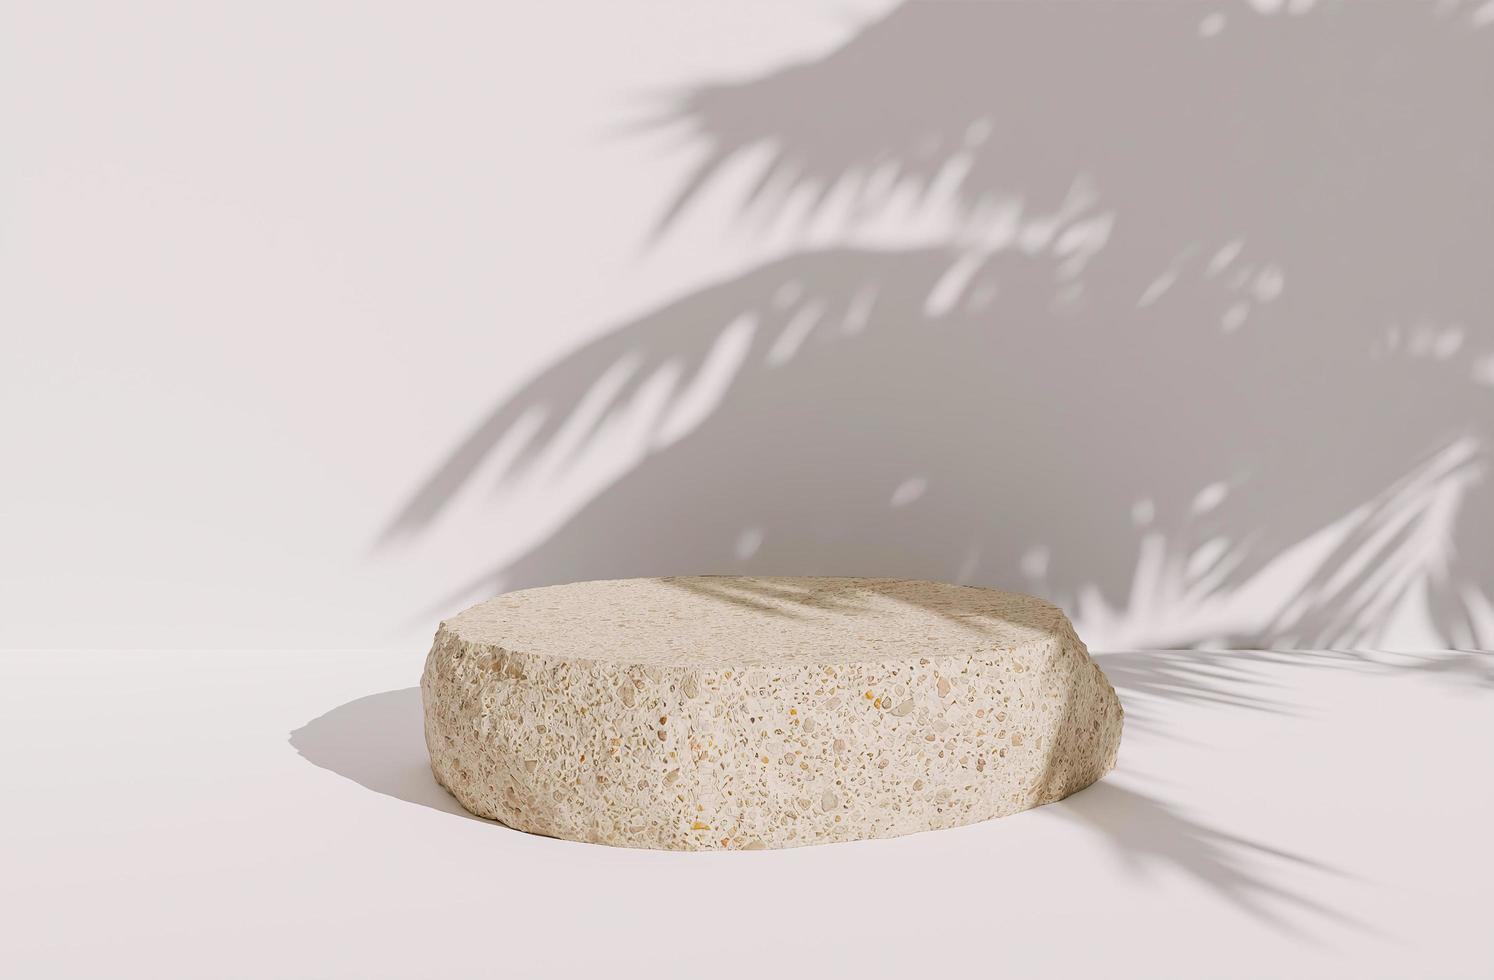 ensam sten för produktpresentation på vit bakgrund med skuggor av palmblad, 3d-rendering foto